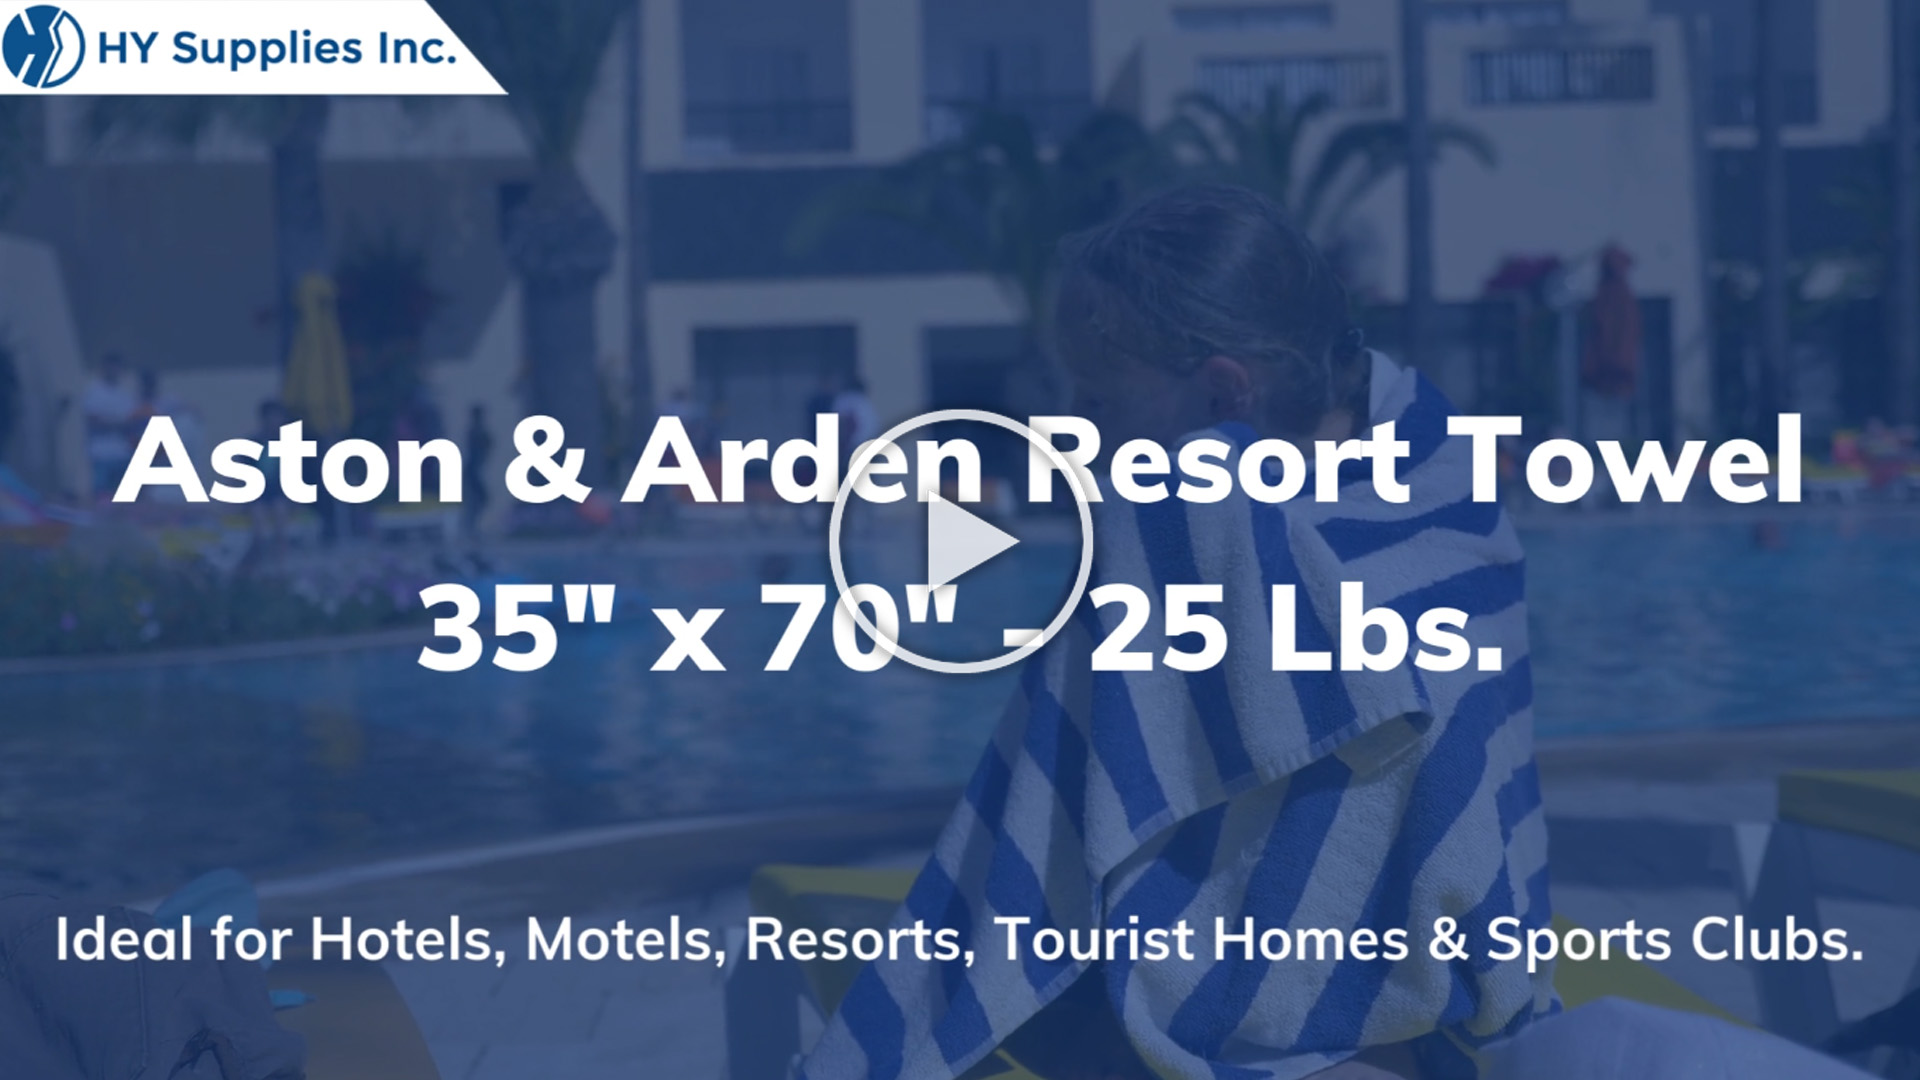 Aston & Arden Resort Towel - 35" x 70" - 25 Lbs.